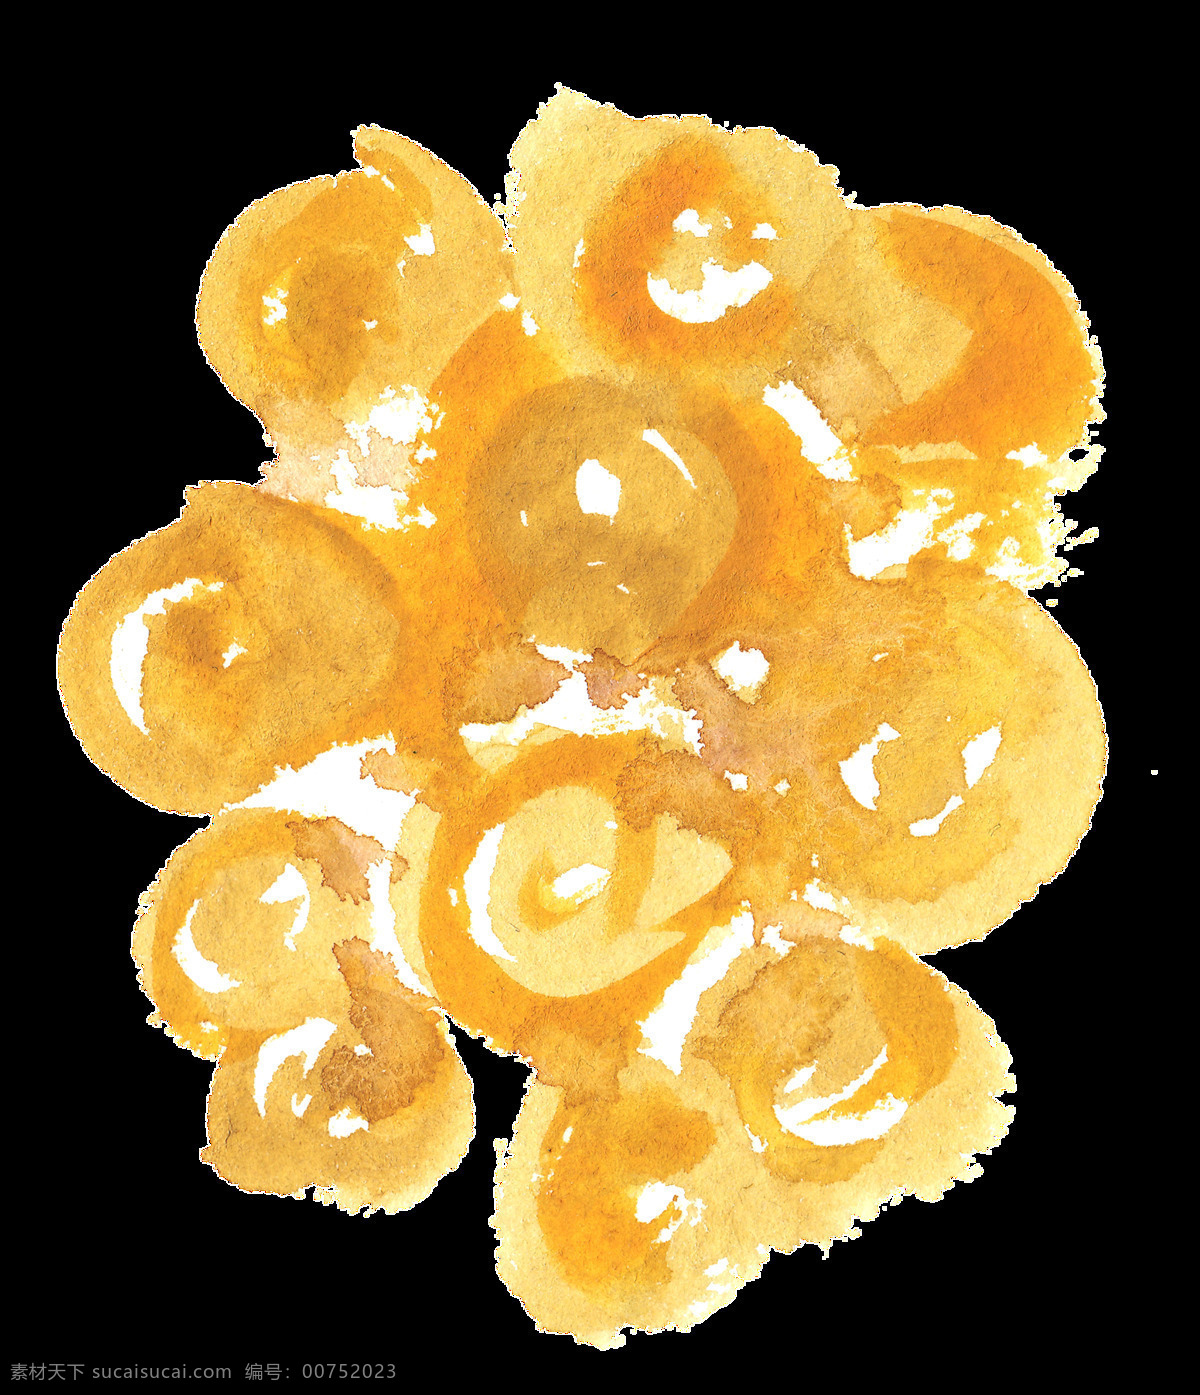 黄色 果肉 卡通 透明 植物 蜂蜜 透明素材 免扣素材 装饰图案